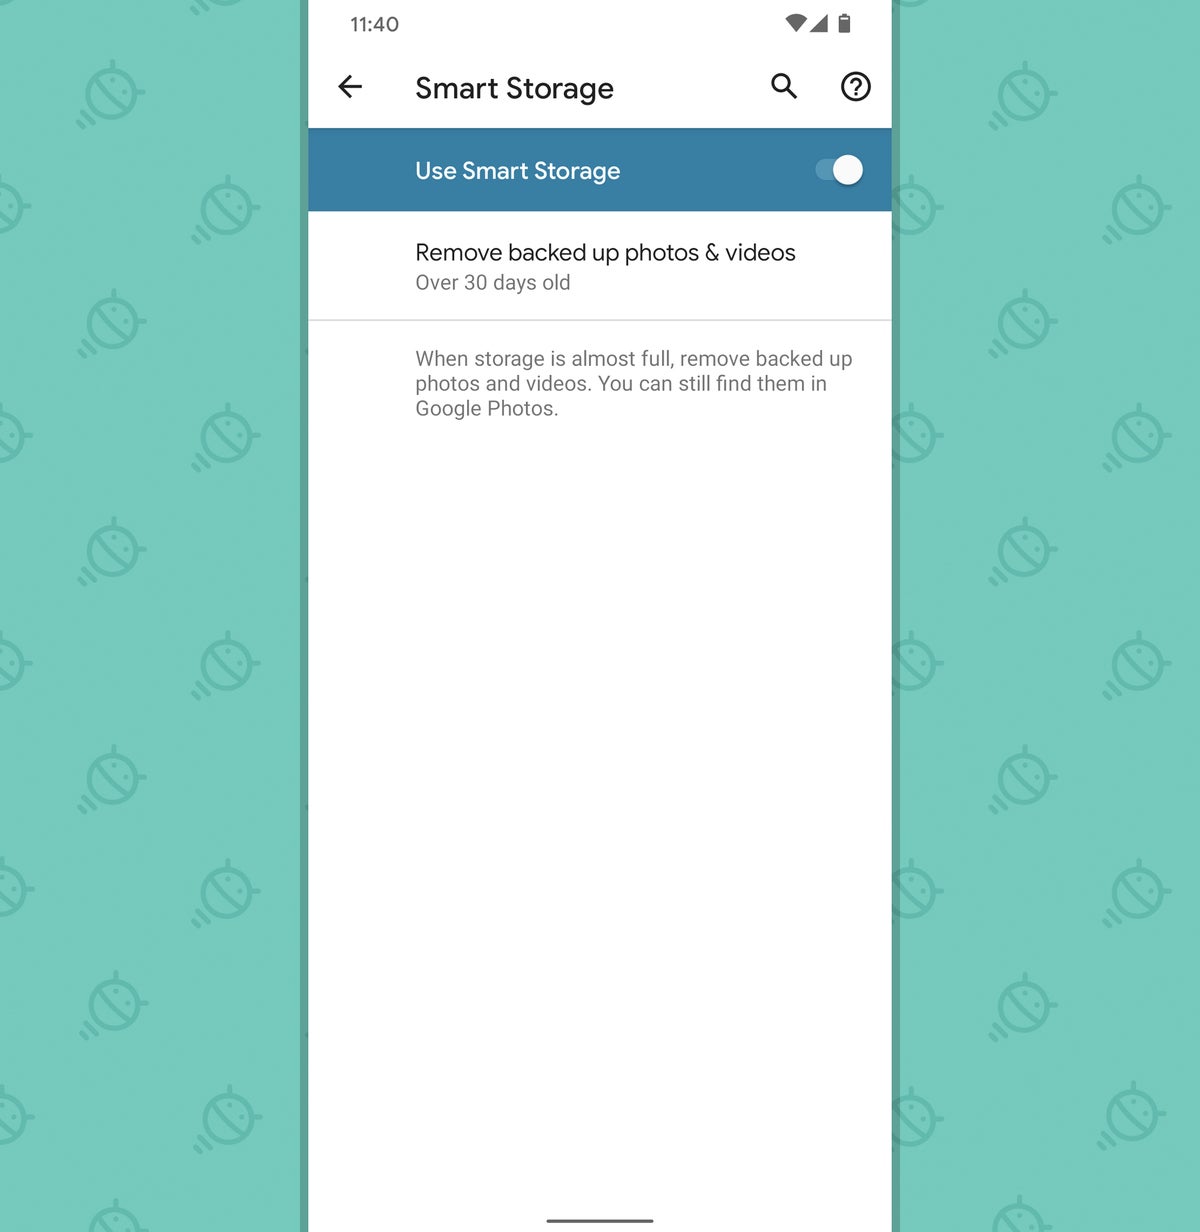 Google Pixel Features: Smart Storage